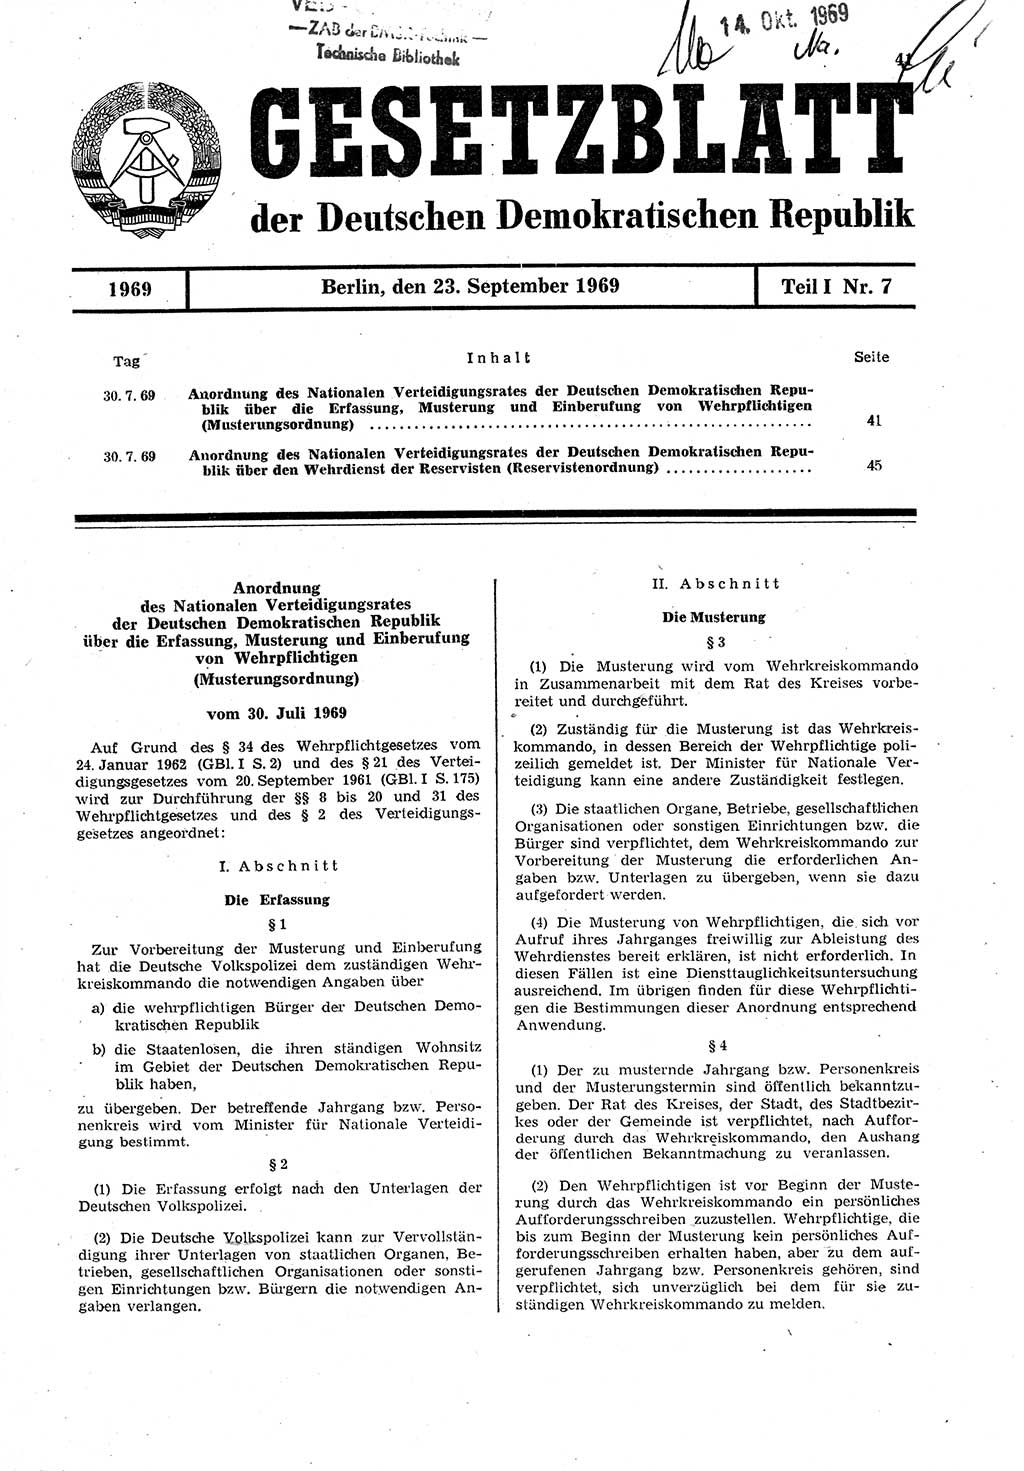 Gesetzblatt (GBl.) der Deutschen Demokratischen Republik (DDR) Teil Ⅰ 1969, Seite 41 (GBl. DDR Ⅰ 1969, S. 41)